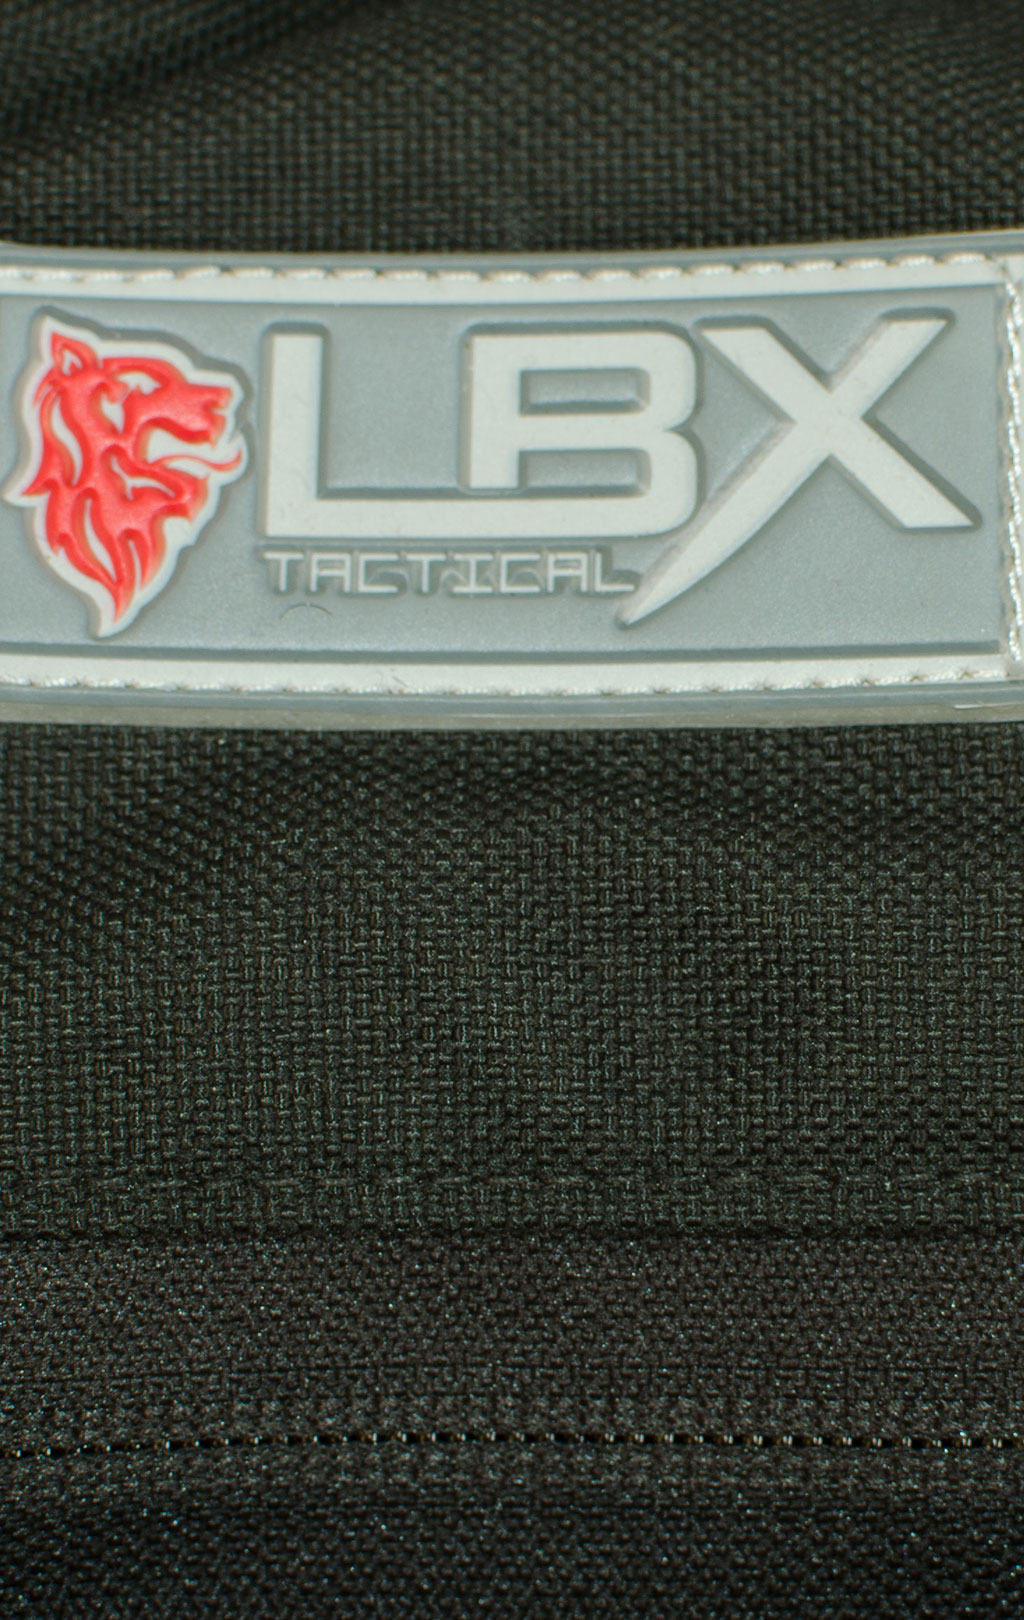 Рюкзак тактический LBX с вкладышем black 